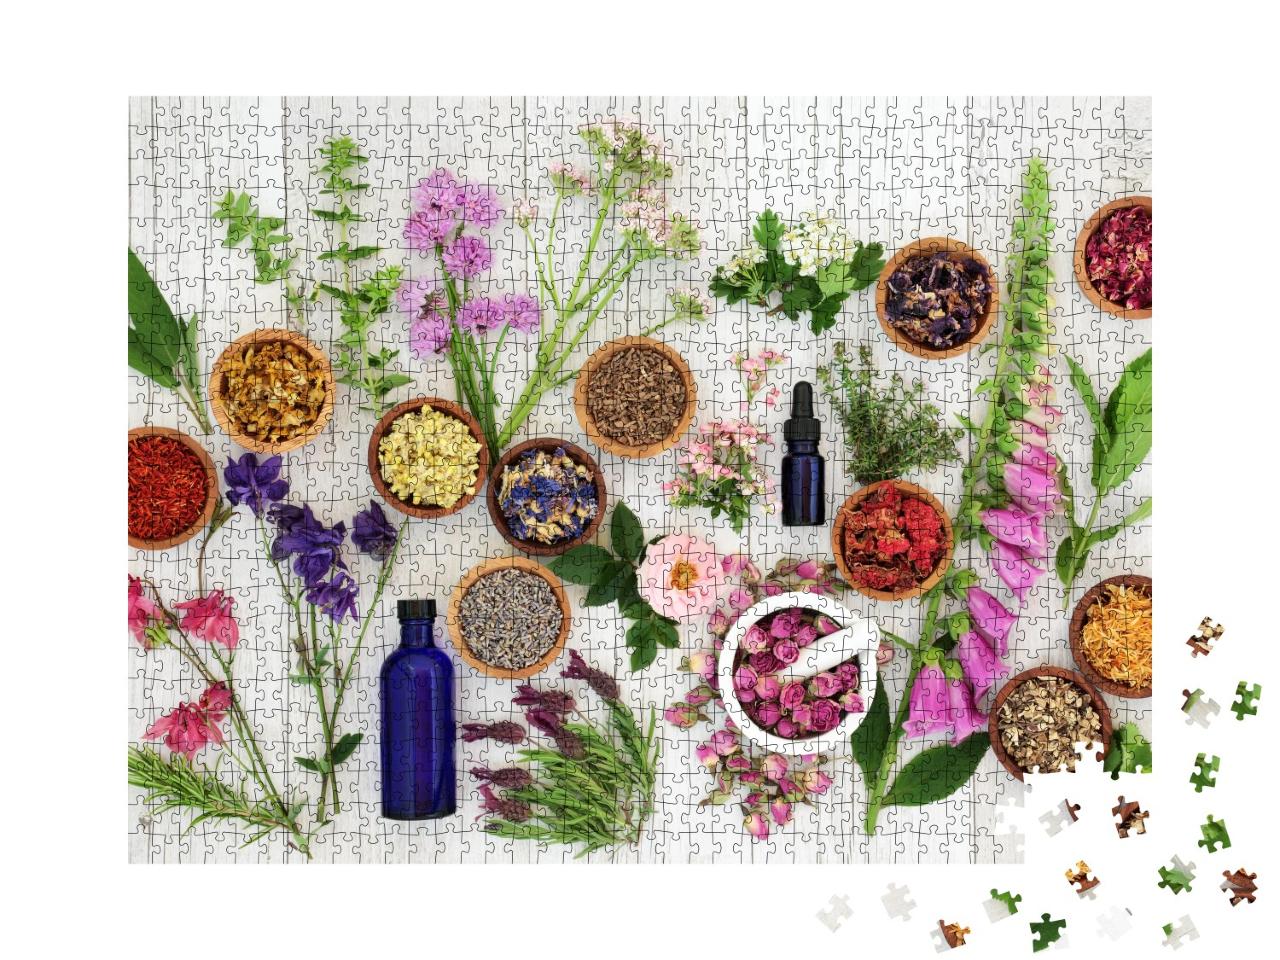 Puzzle de 1000 pièces « Sélection d'herbes et de fleurs dans des coupes en bois »